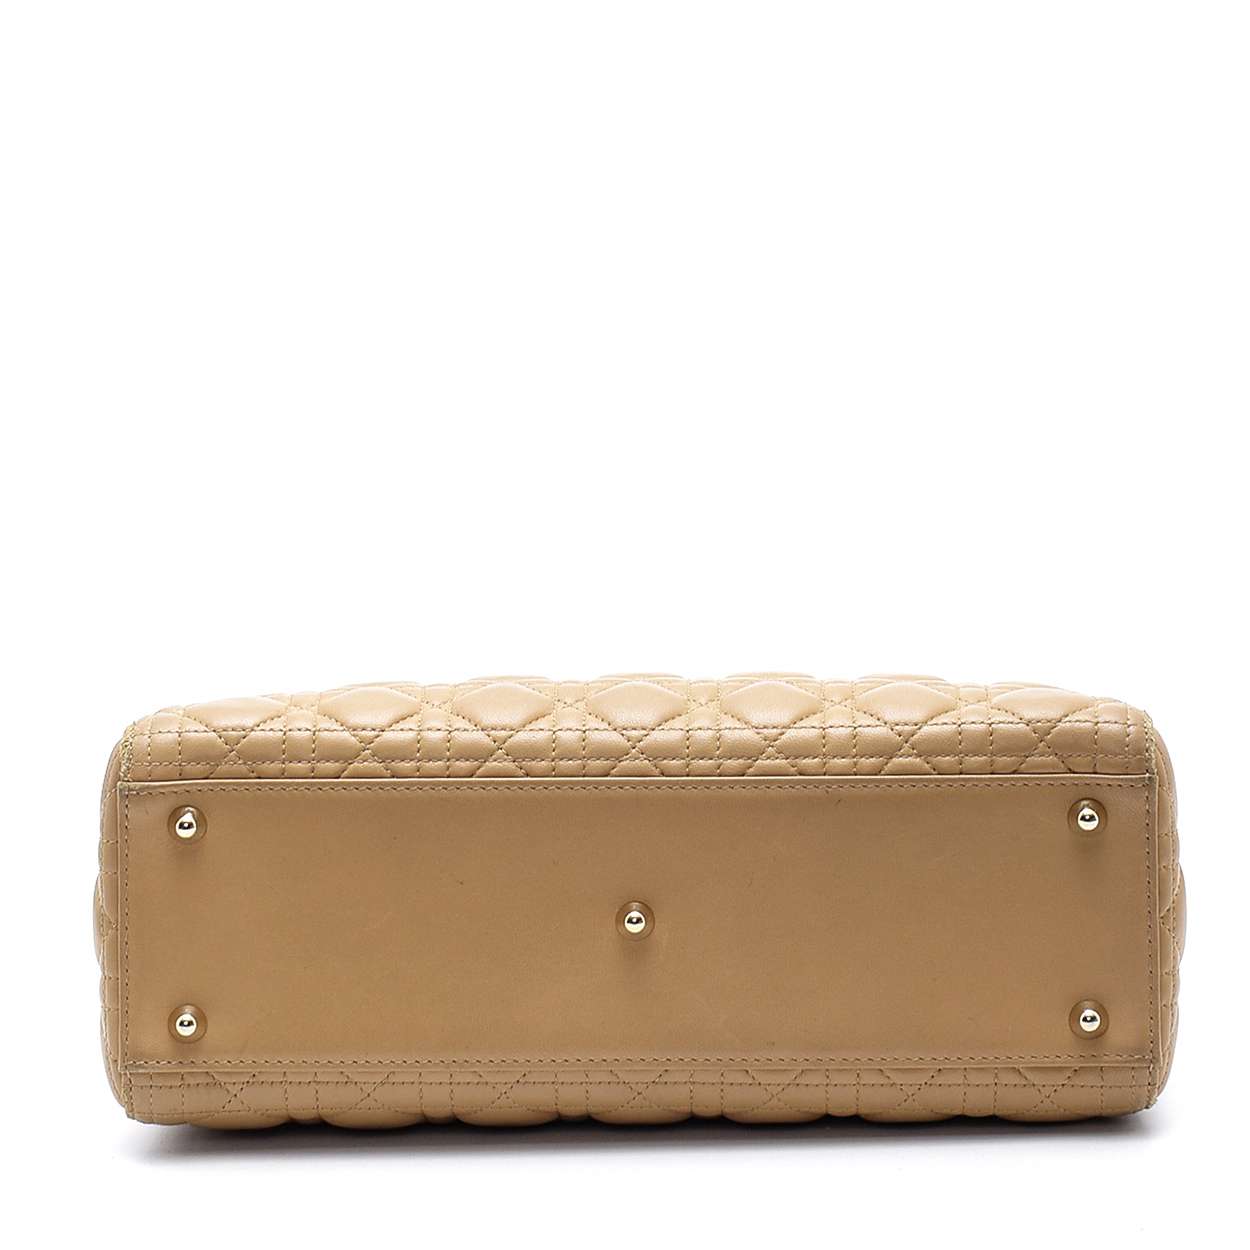 Christian Dior - Beige Cannage Lambskin Leather Lady Dior Medium Bag